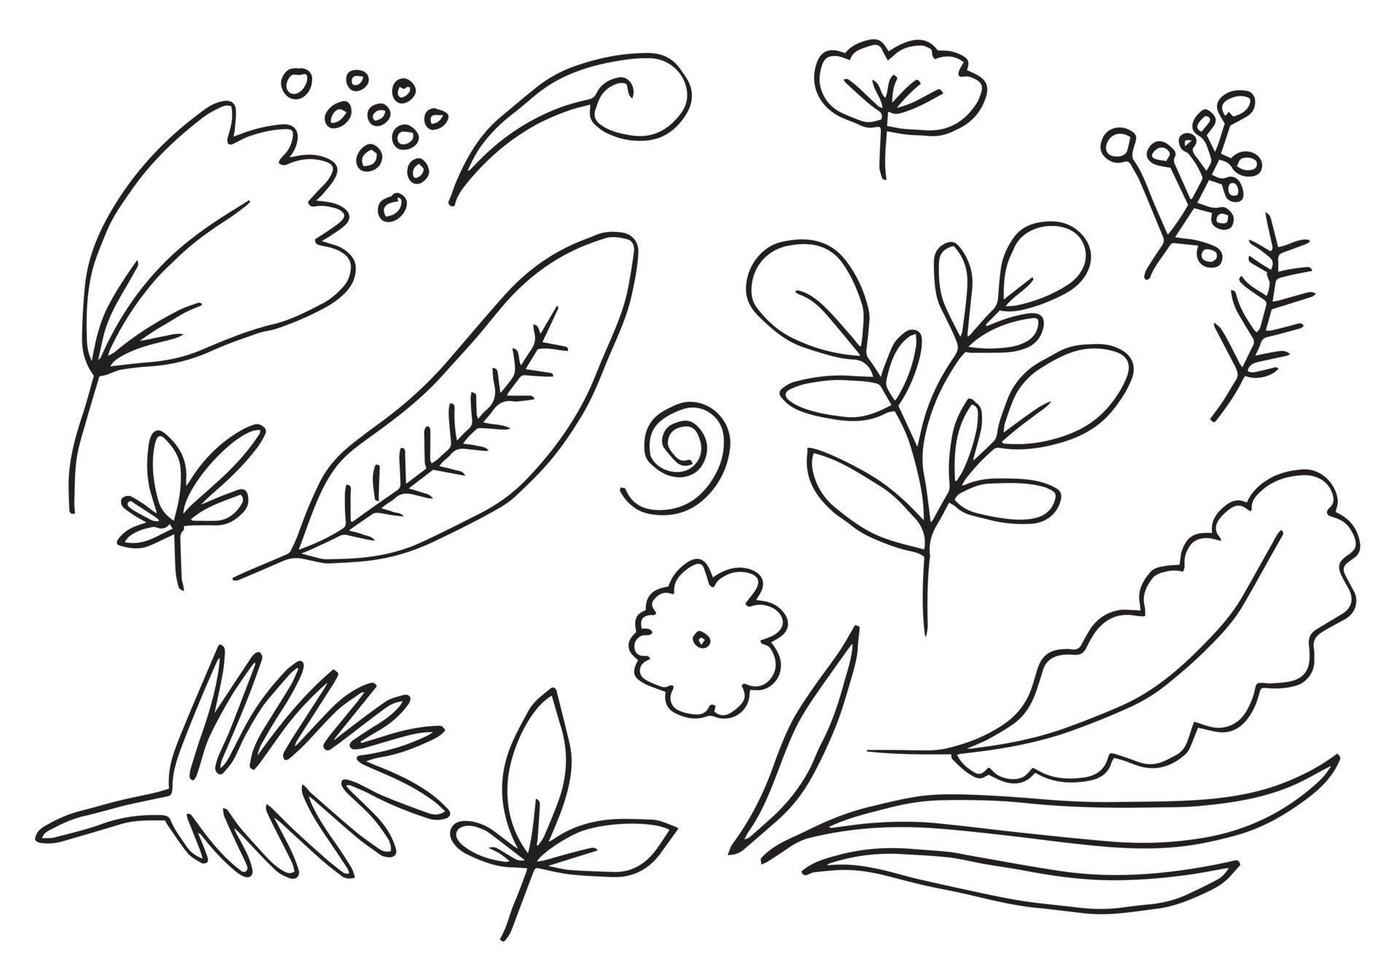 uma coleção de imagens de flores desenhadas à mão, como campânula, crisântemos, girassóis, flores de algodão e folhas tropicais vetor